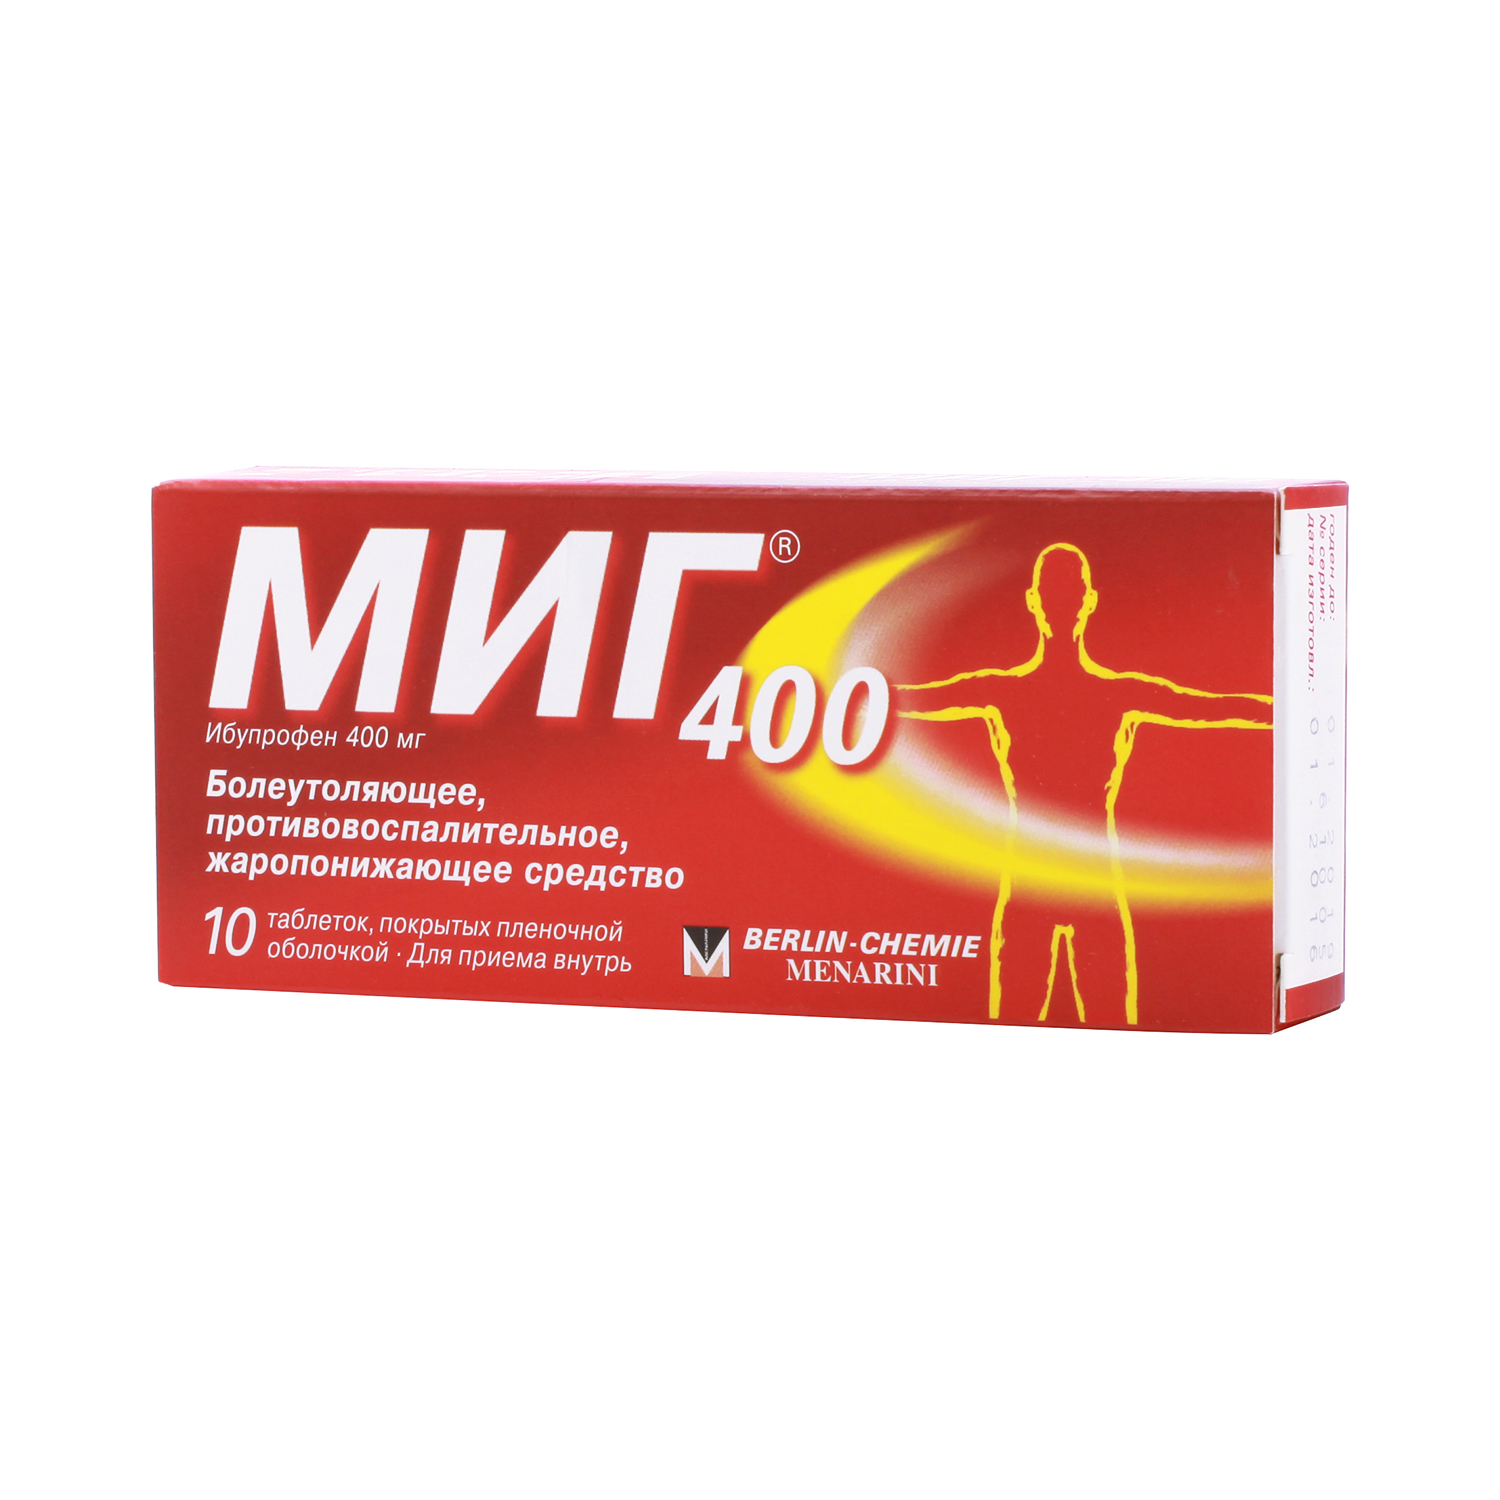 МИГ 400 таблетки - инструкция по применению, отзывы, описание, аналоги .